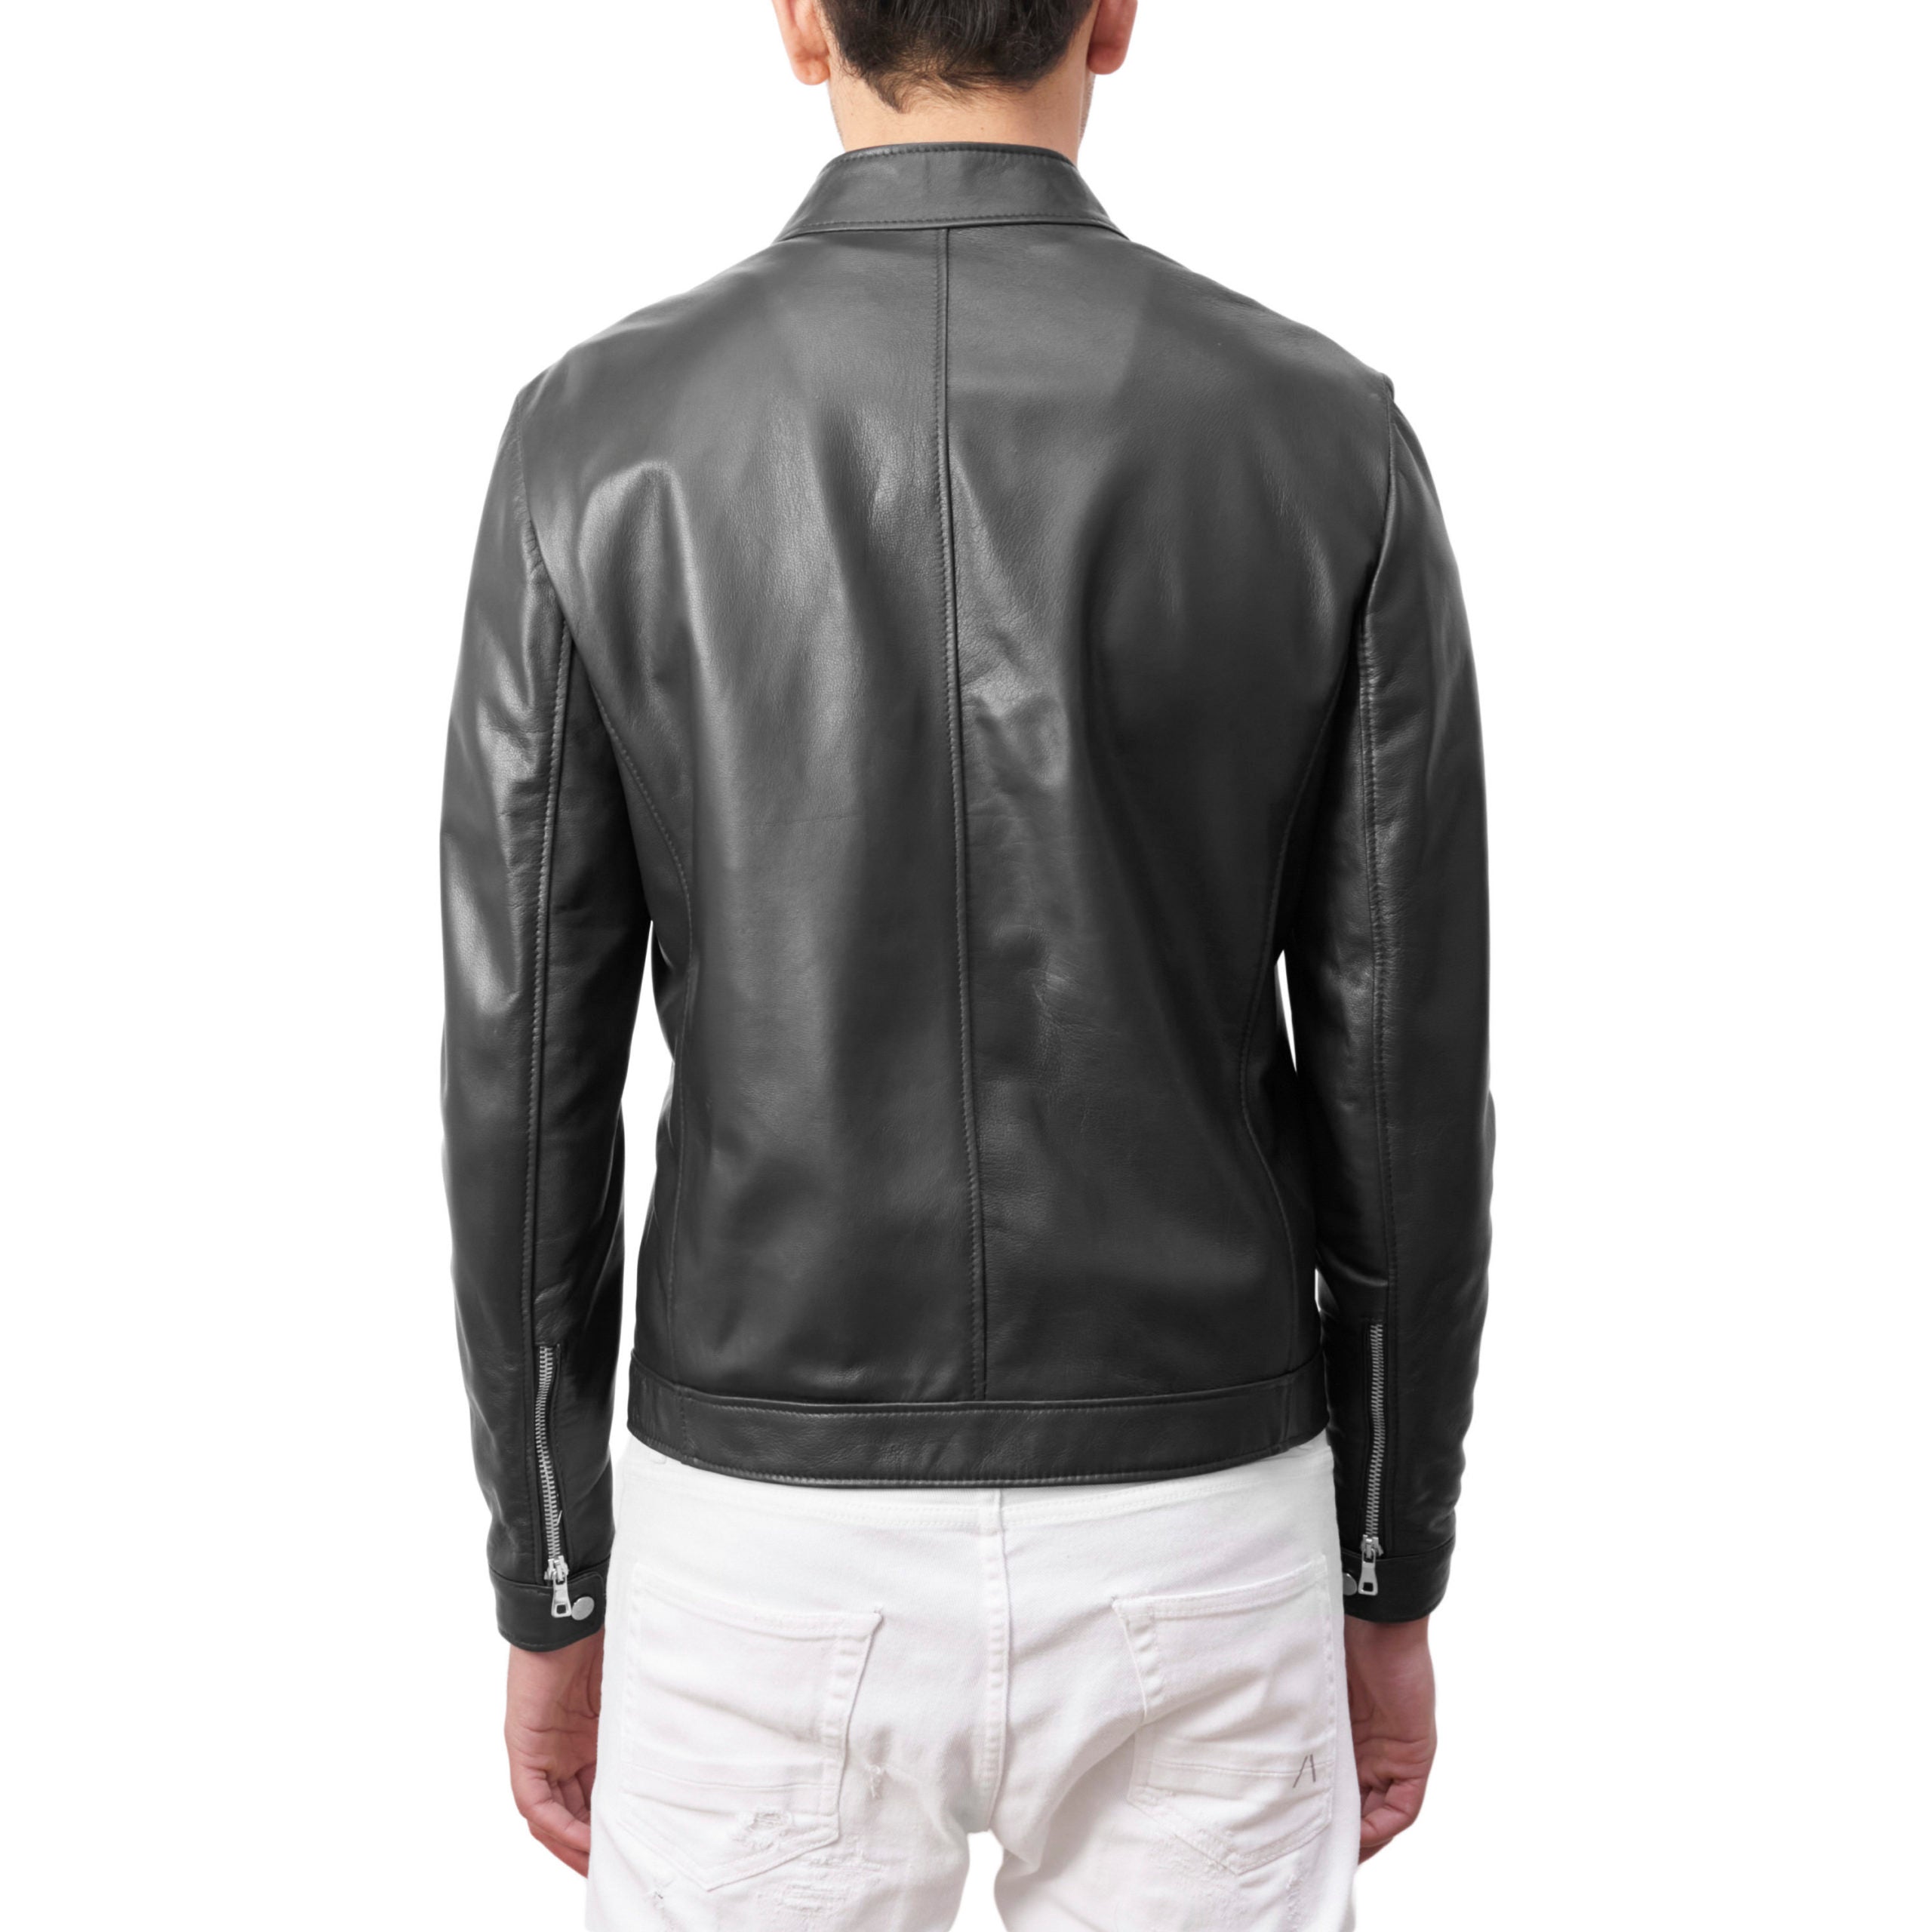 97PNANE leather jacket